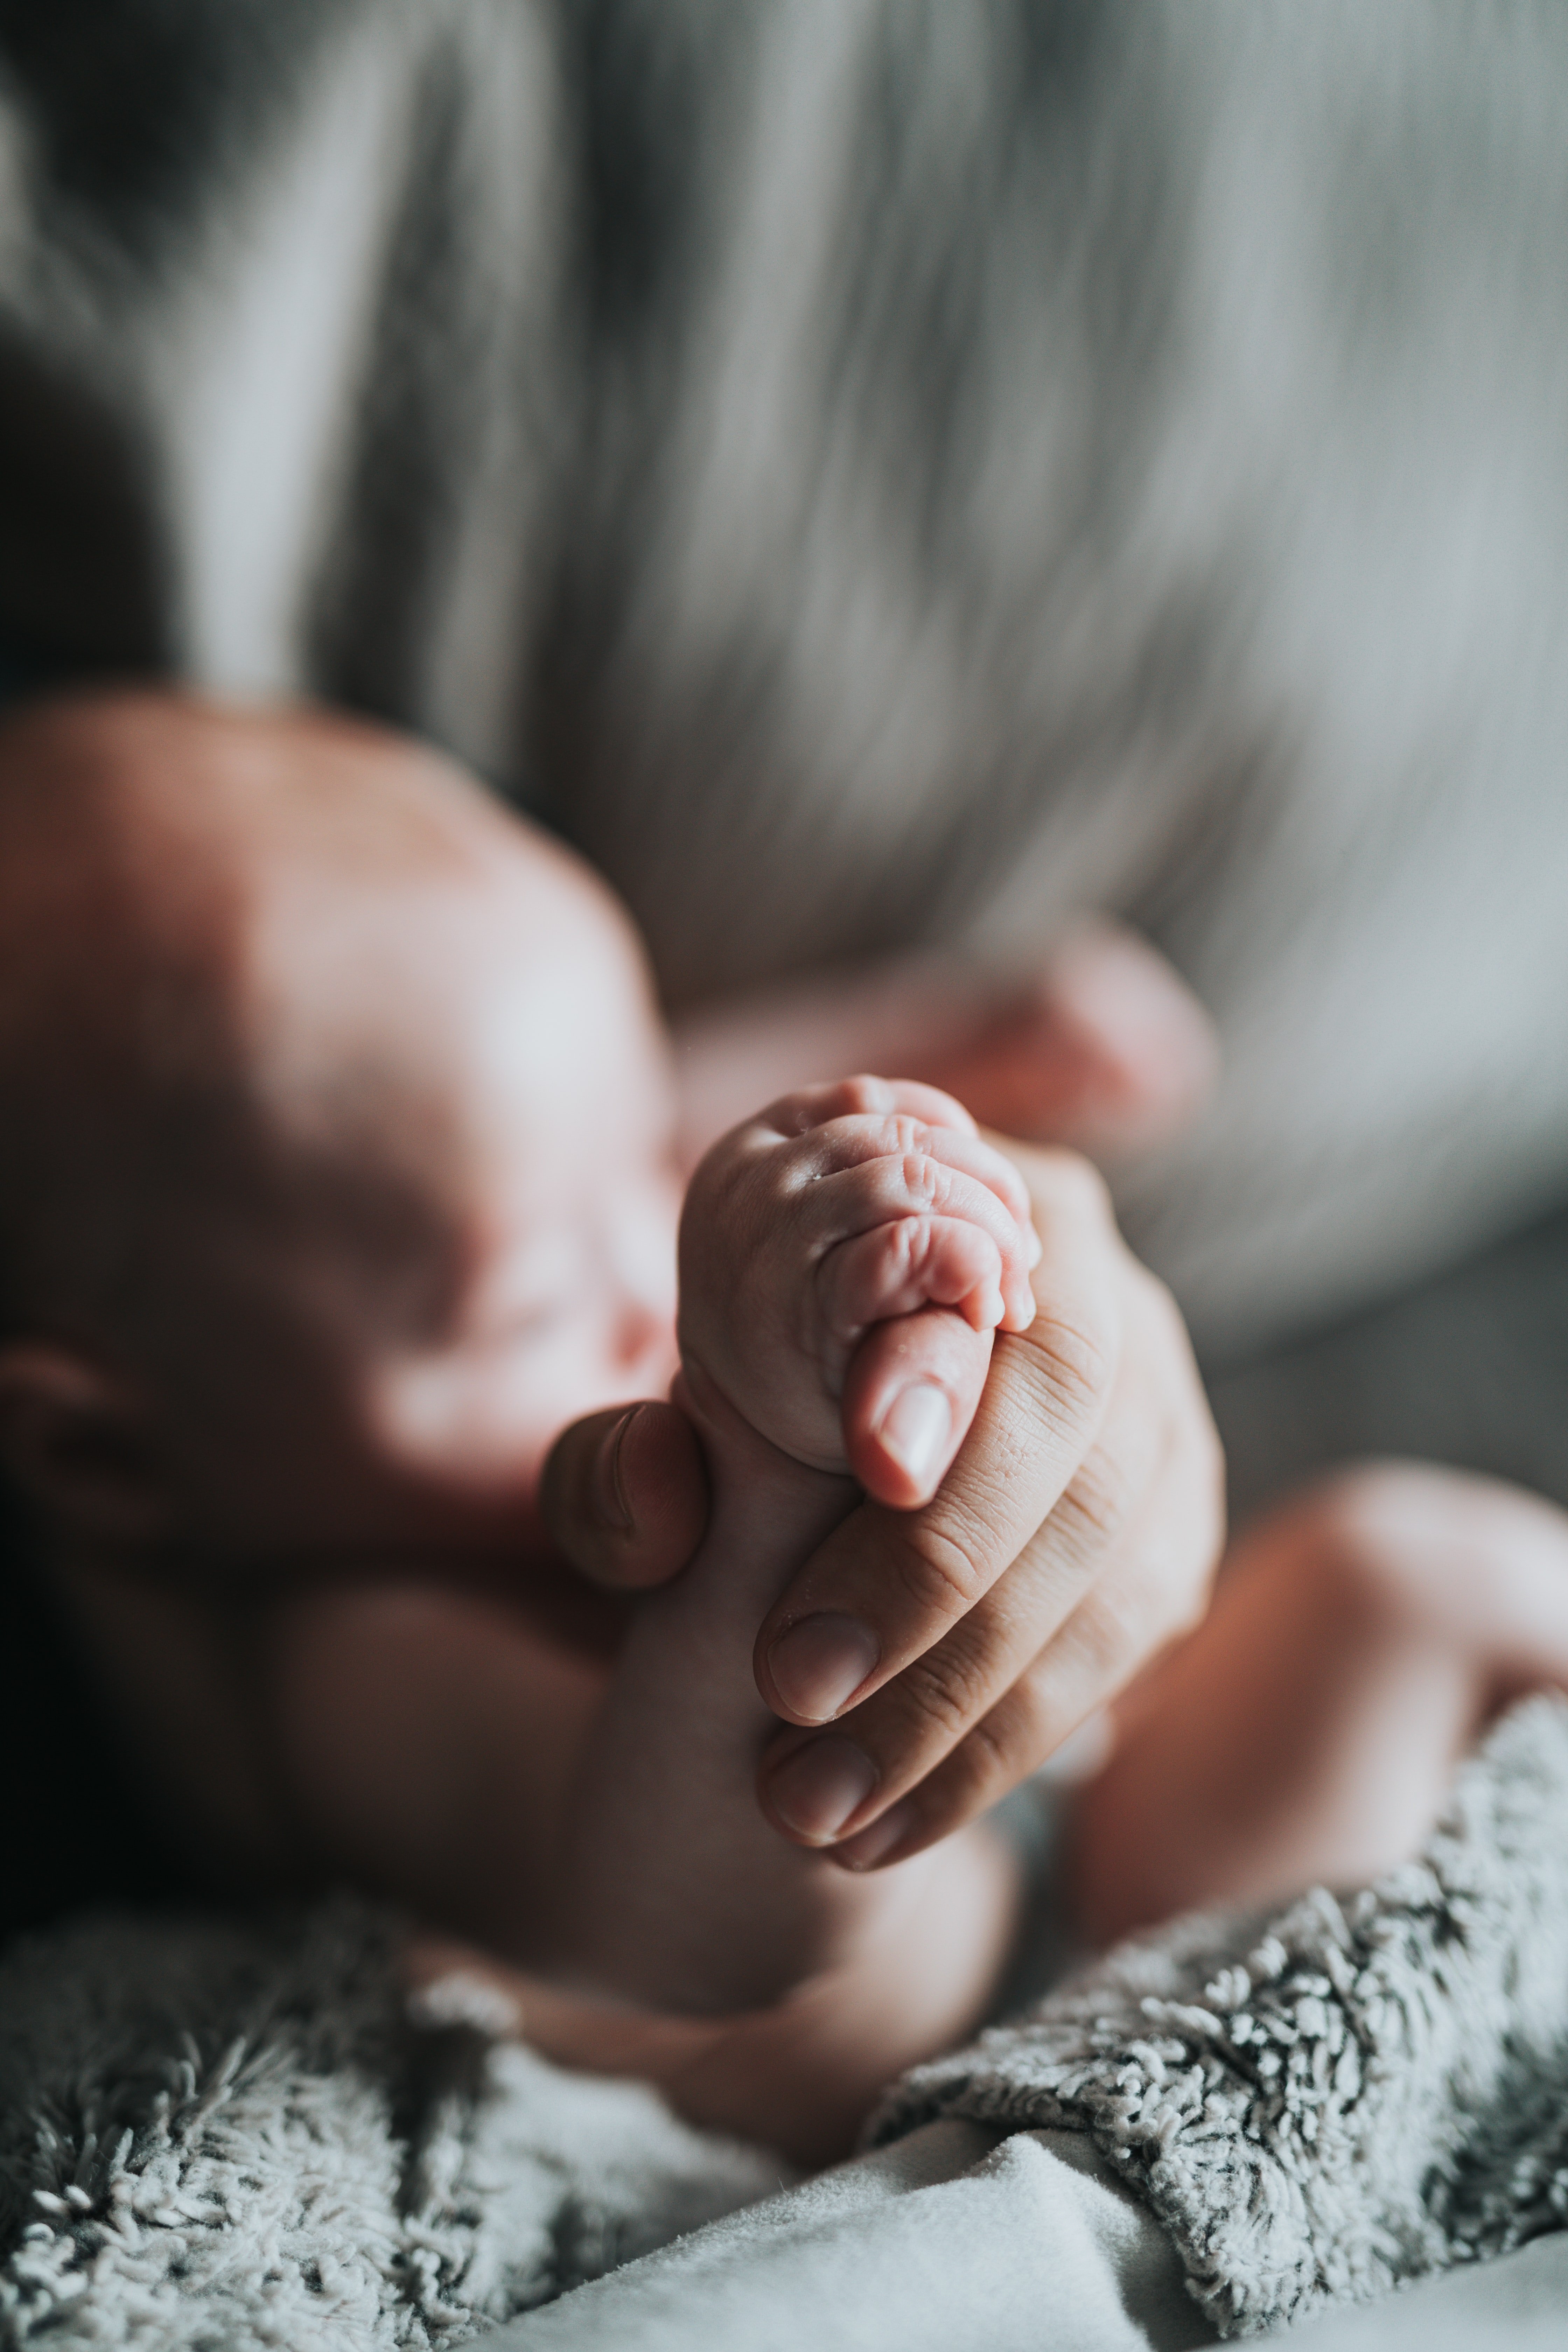 Maja hielt ihr neugeborenes Baby im Arm und bemerkte ein Muttermal auf seinem kleinen Arm. | Quelle: Unsplash